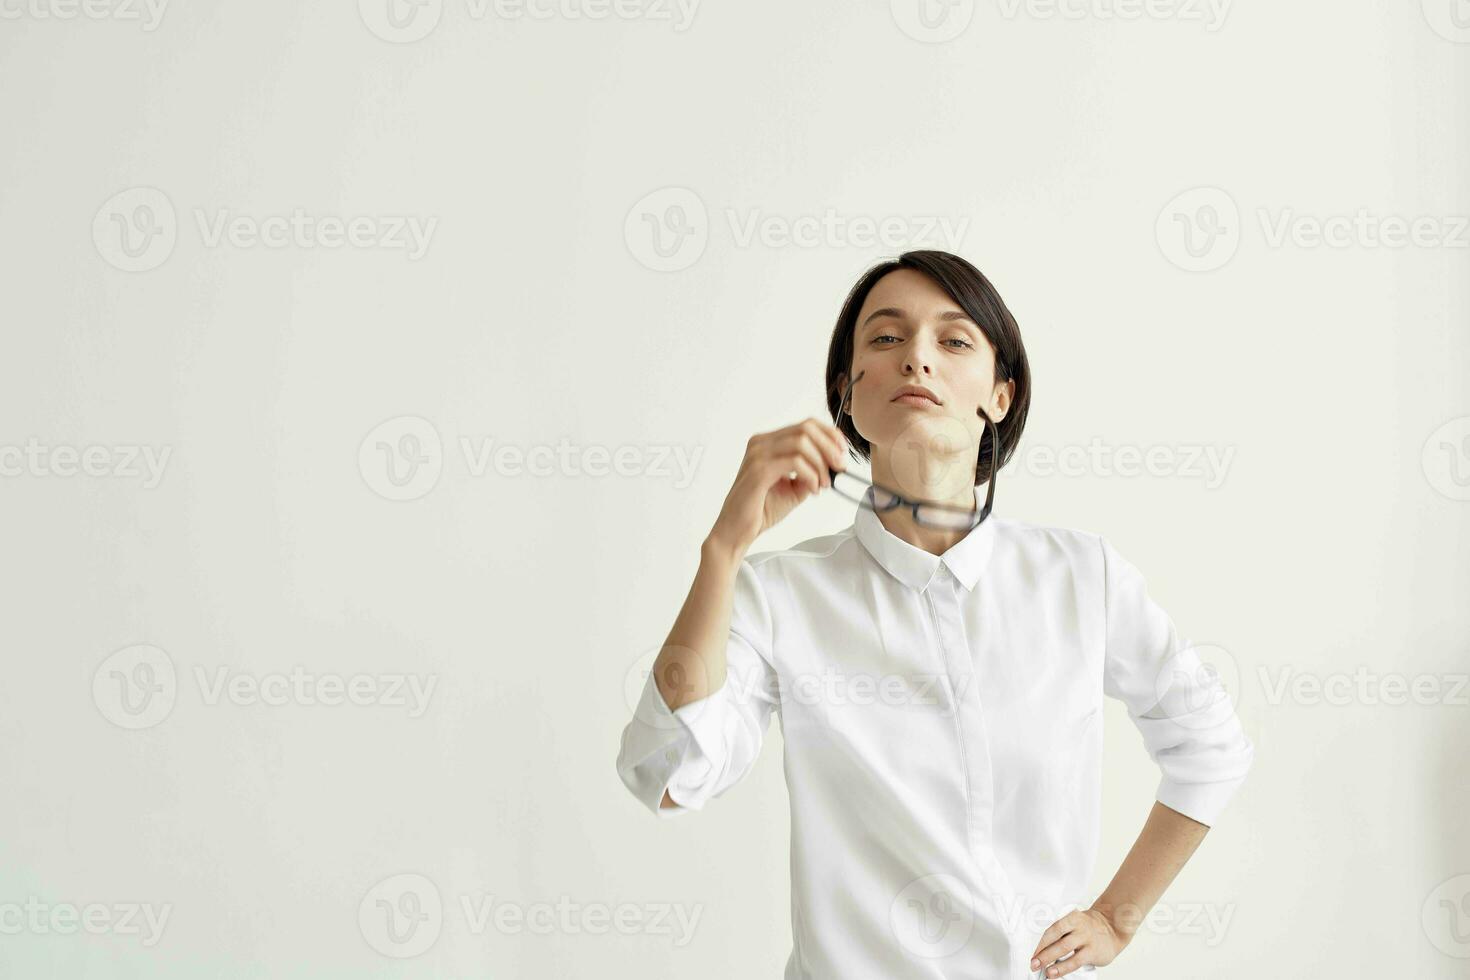 vrouw in wit overhemd met bril kantoor uitvoerend studio levensstijl foto